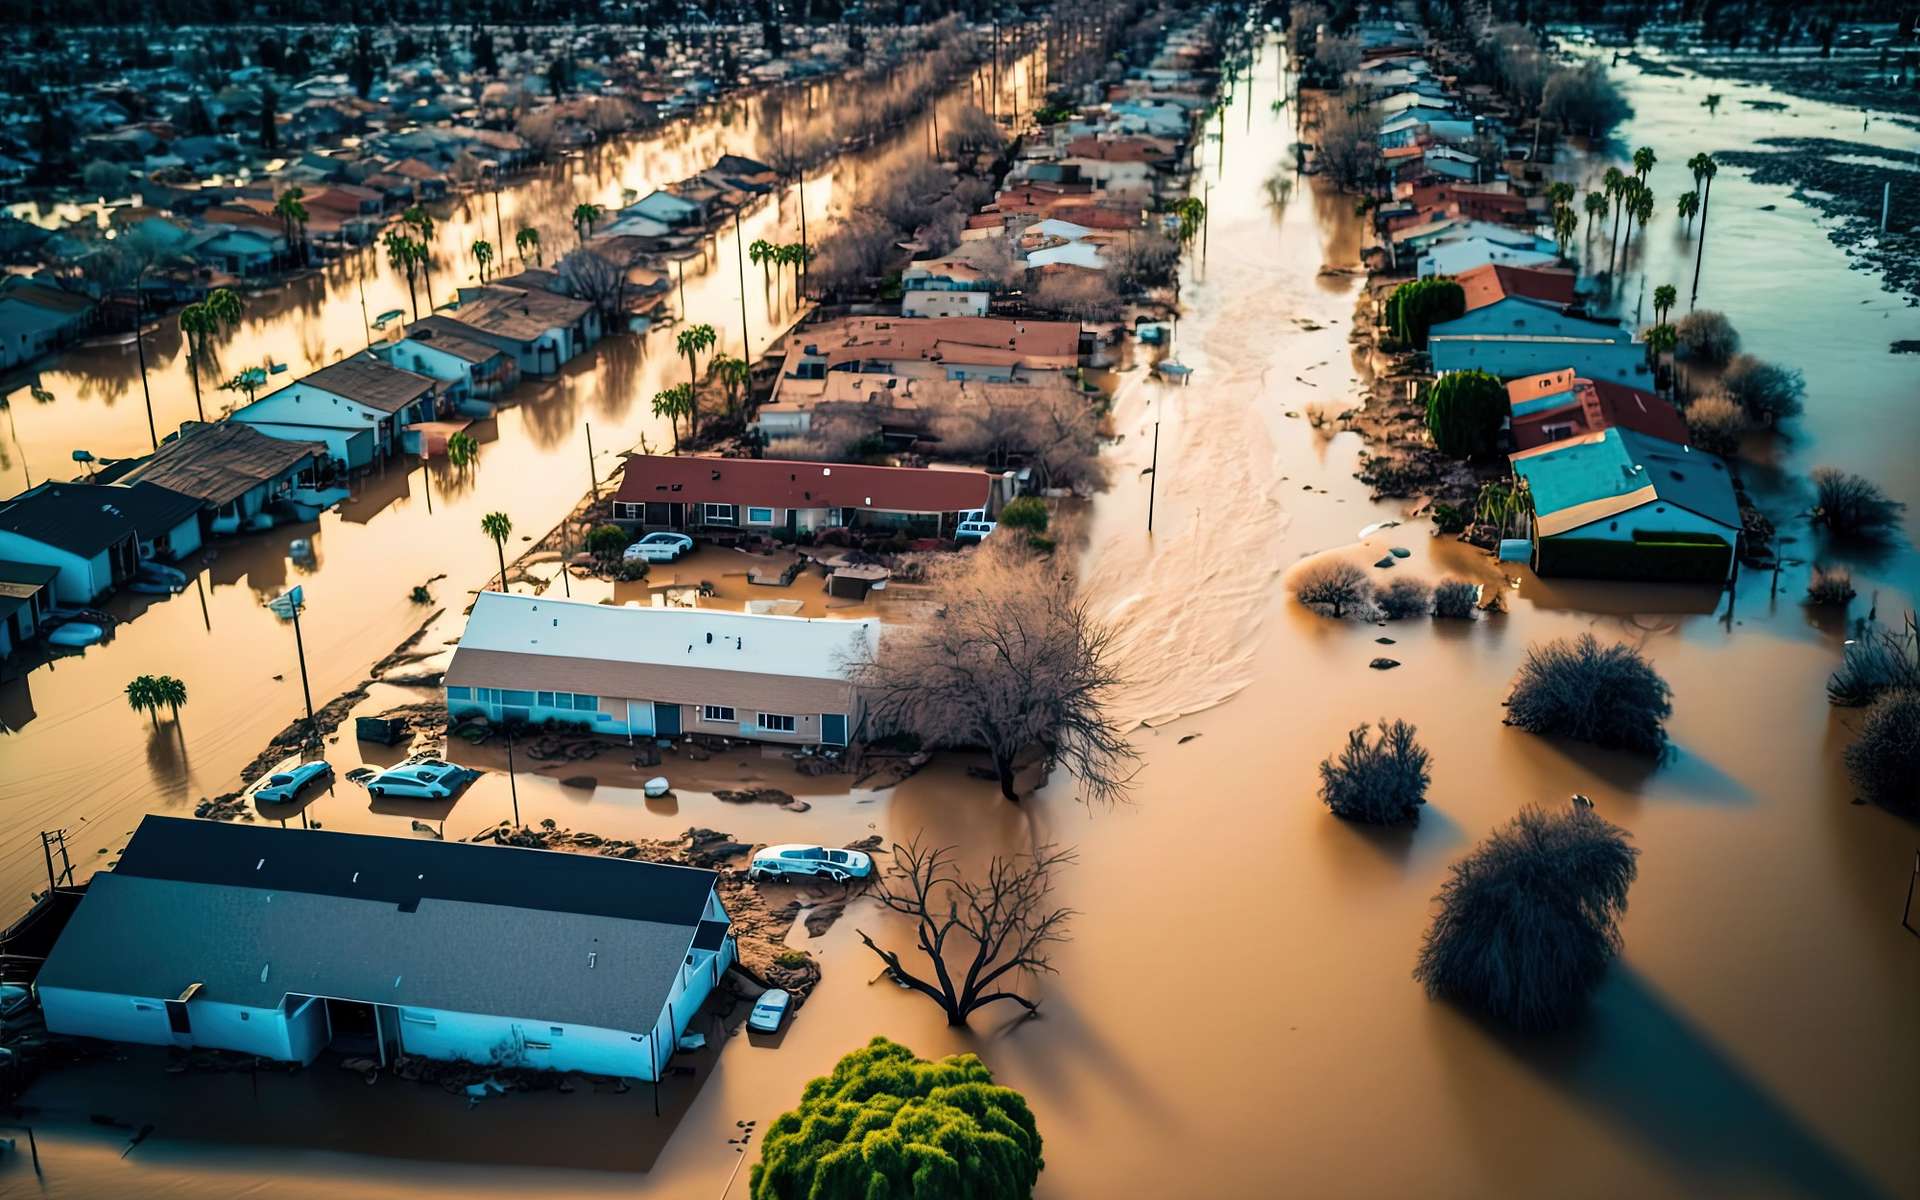 Inondations majeures : ces régions du monde qui doivent se préparer au pire avec le réchauffement climatique